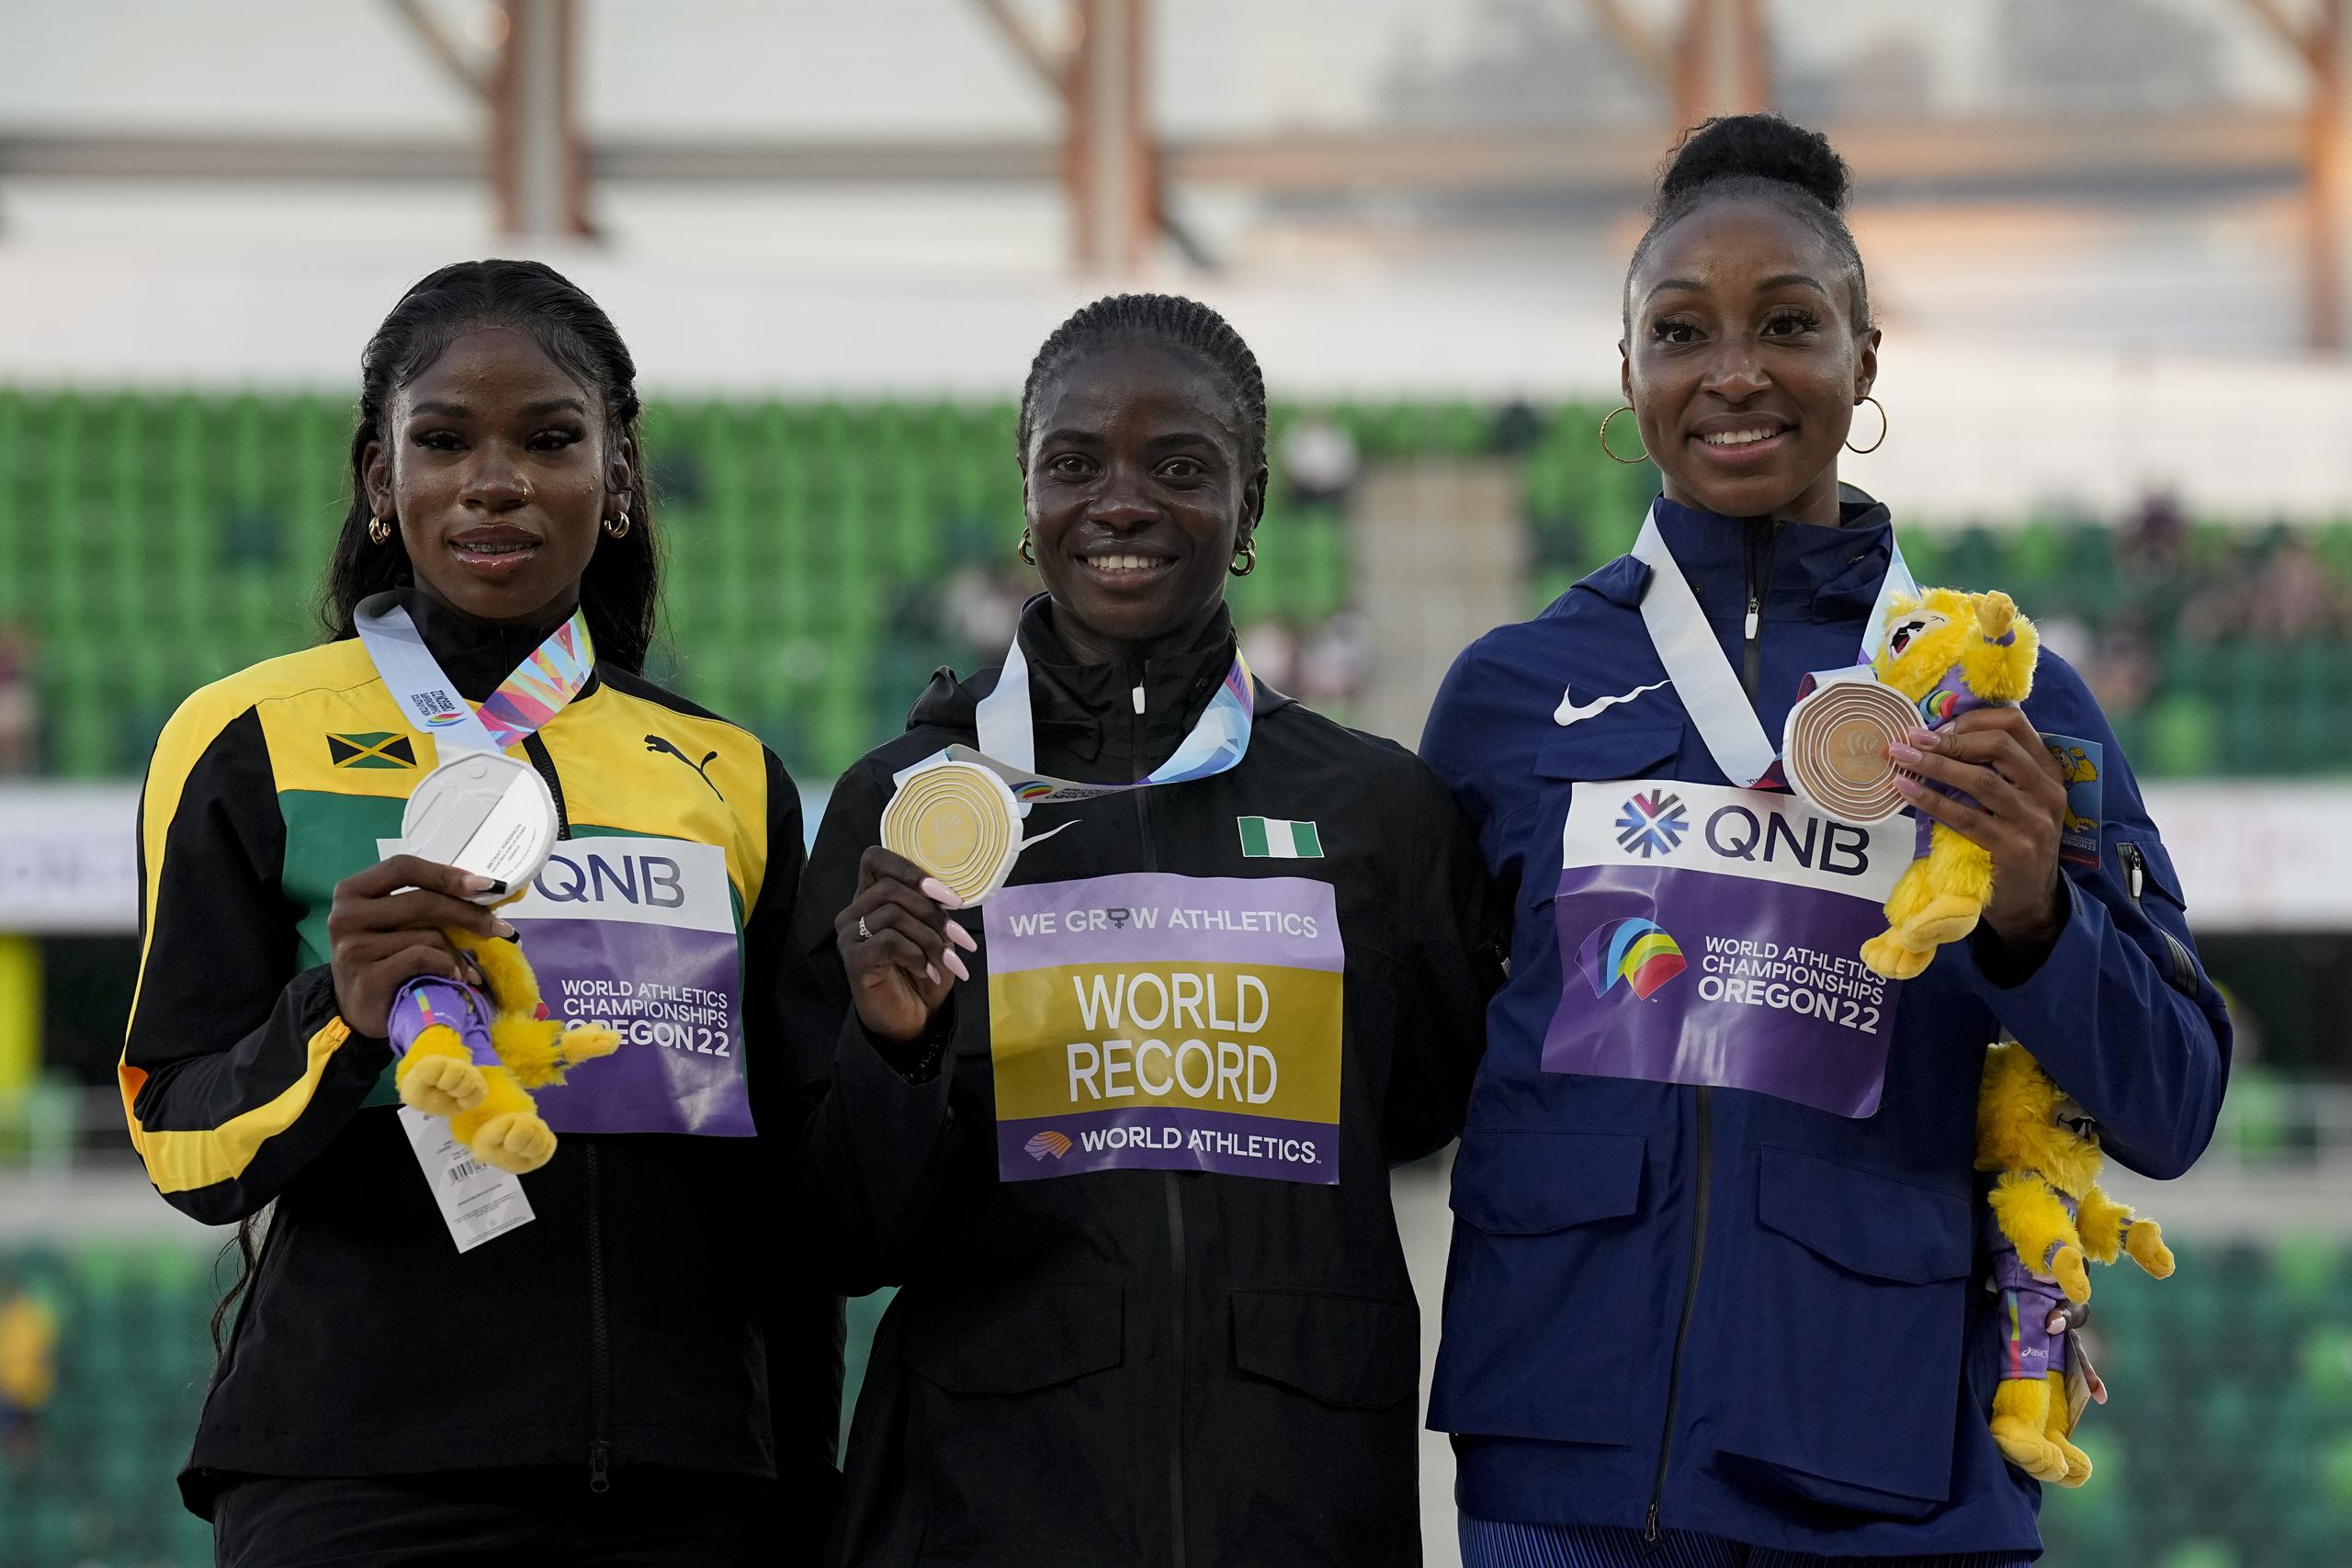 La ganadora de la medalla de oro en el Mundial en Oregon, Tobi Amusan, de Nigeria, al centro, posa junto a Britany Anderson de Jamaica, a la izquierda, y la boricua Jasmine Camacho Quinn, respectivamente ganadoras de la medalla de plata y bronce en la final de los 100 metros con vallas en Oregon. Las tres estarán otra vez en carrera hoy en Lausanne.